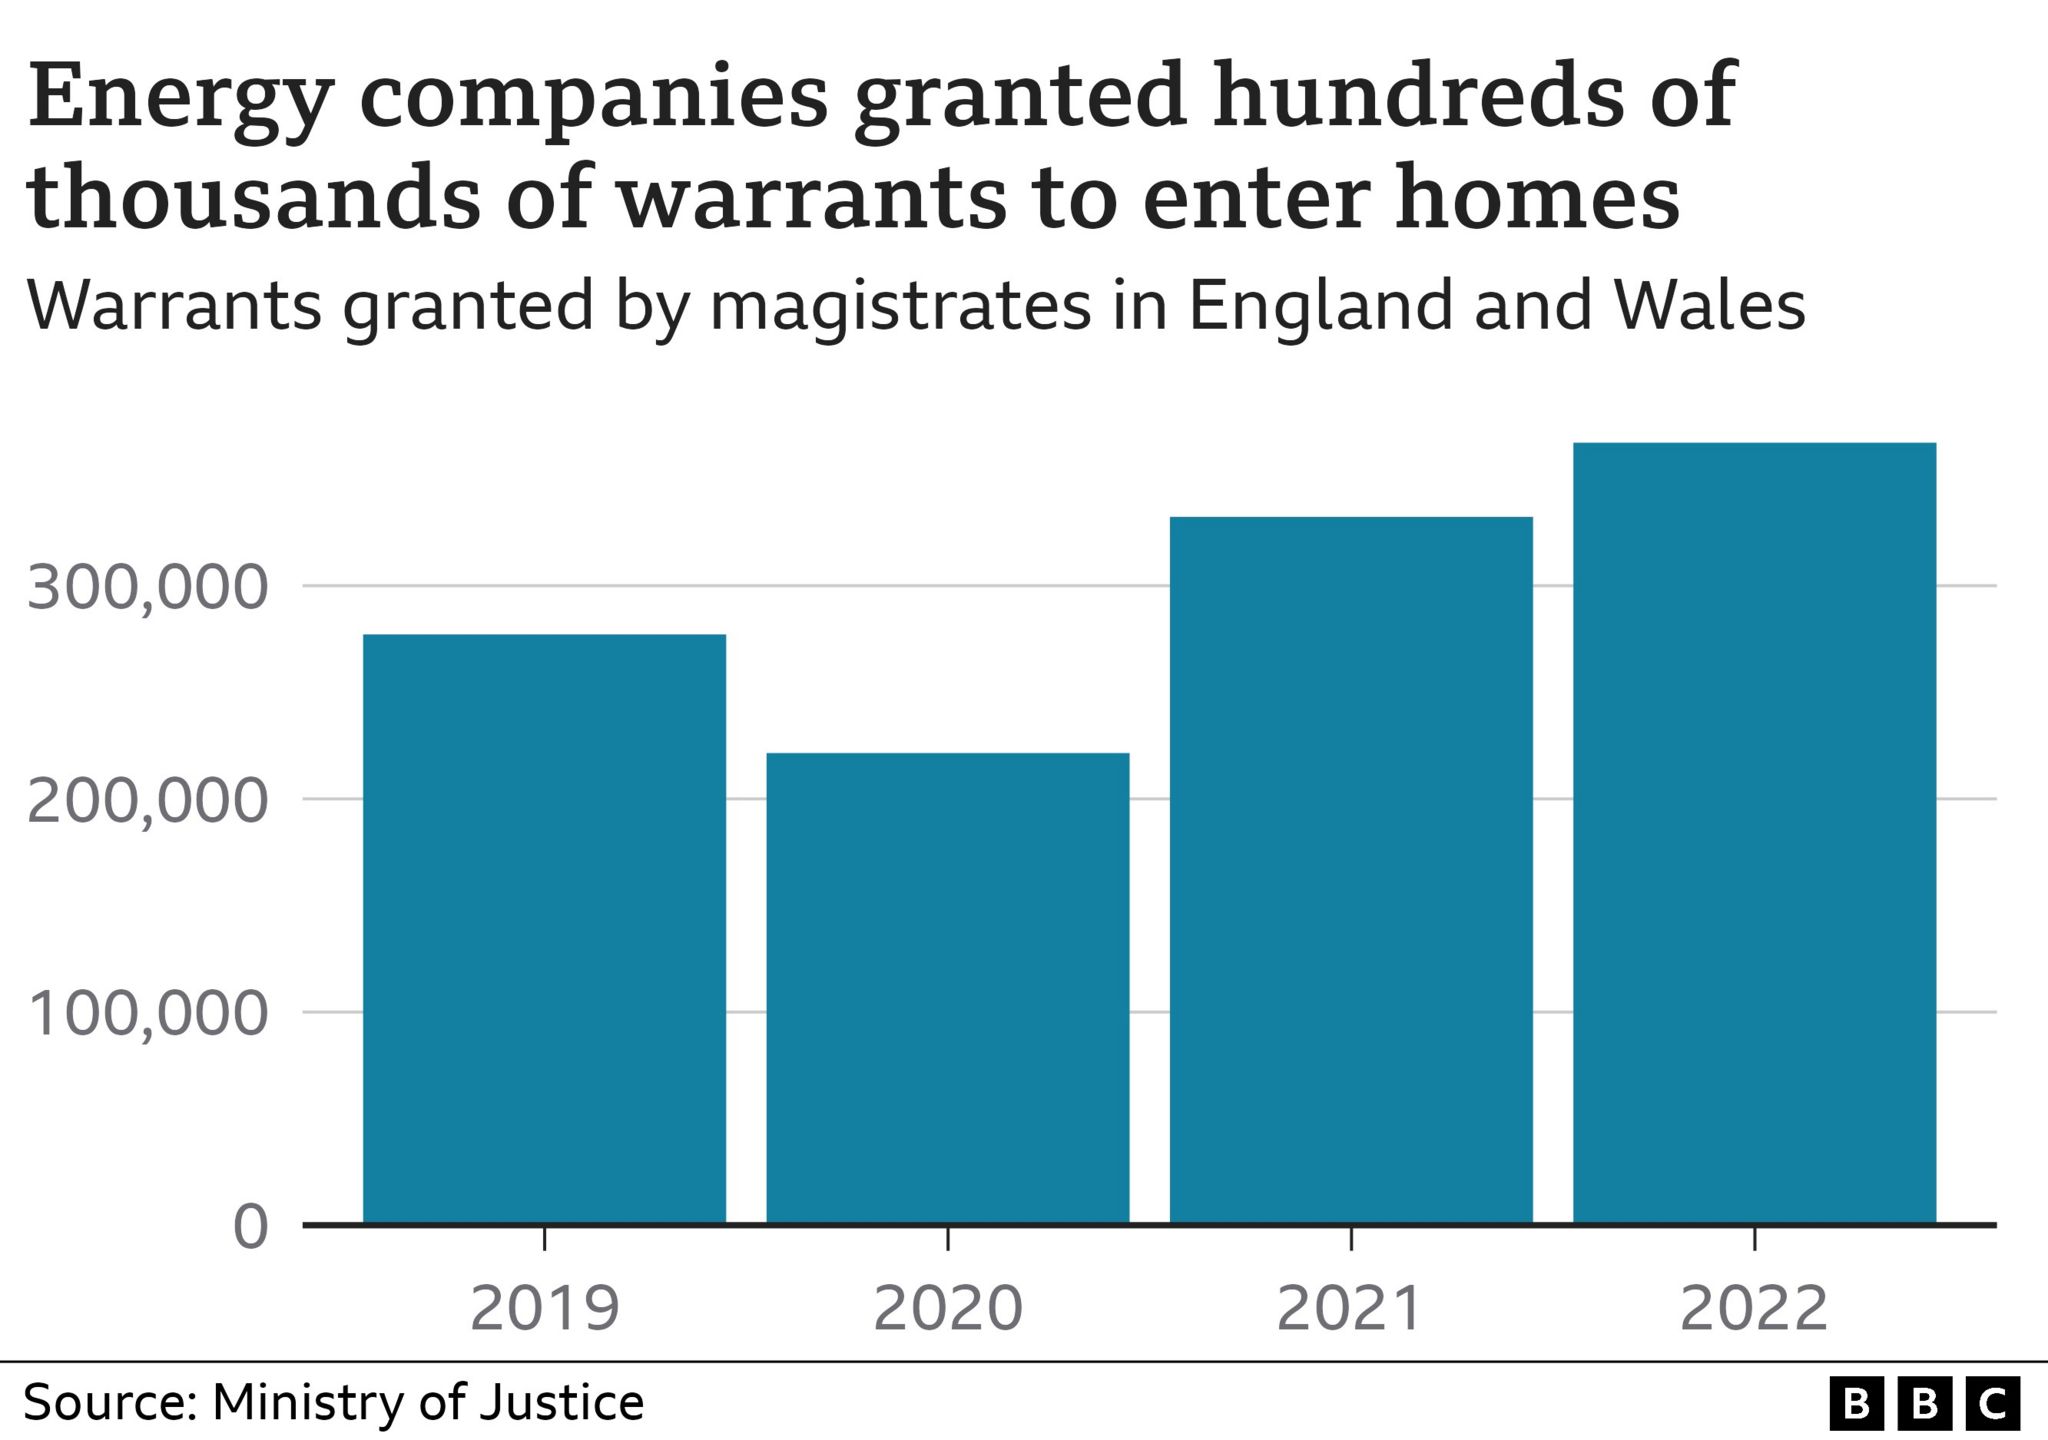 Гистограмма, показывающая количество разрешений, выданных энергетическим компаниям на вход в дома в Англии и Уэльсе, выросло с чуть более 277 000 в 2019 году до чуть более 367 000 в 2022 году с небольшим падением в 2020 году.